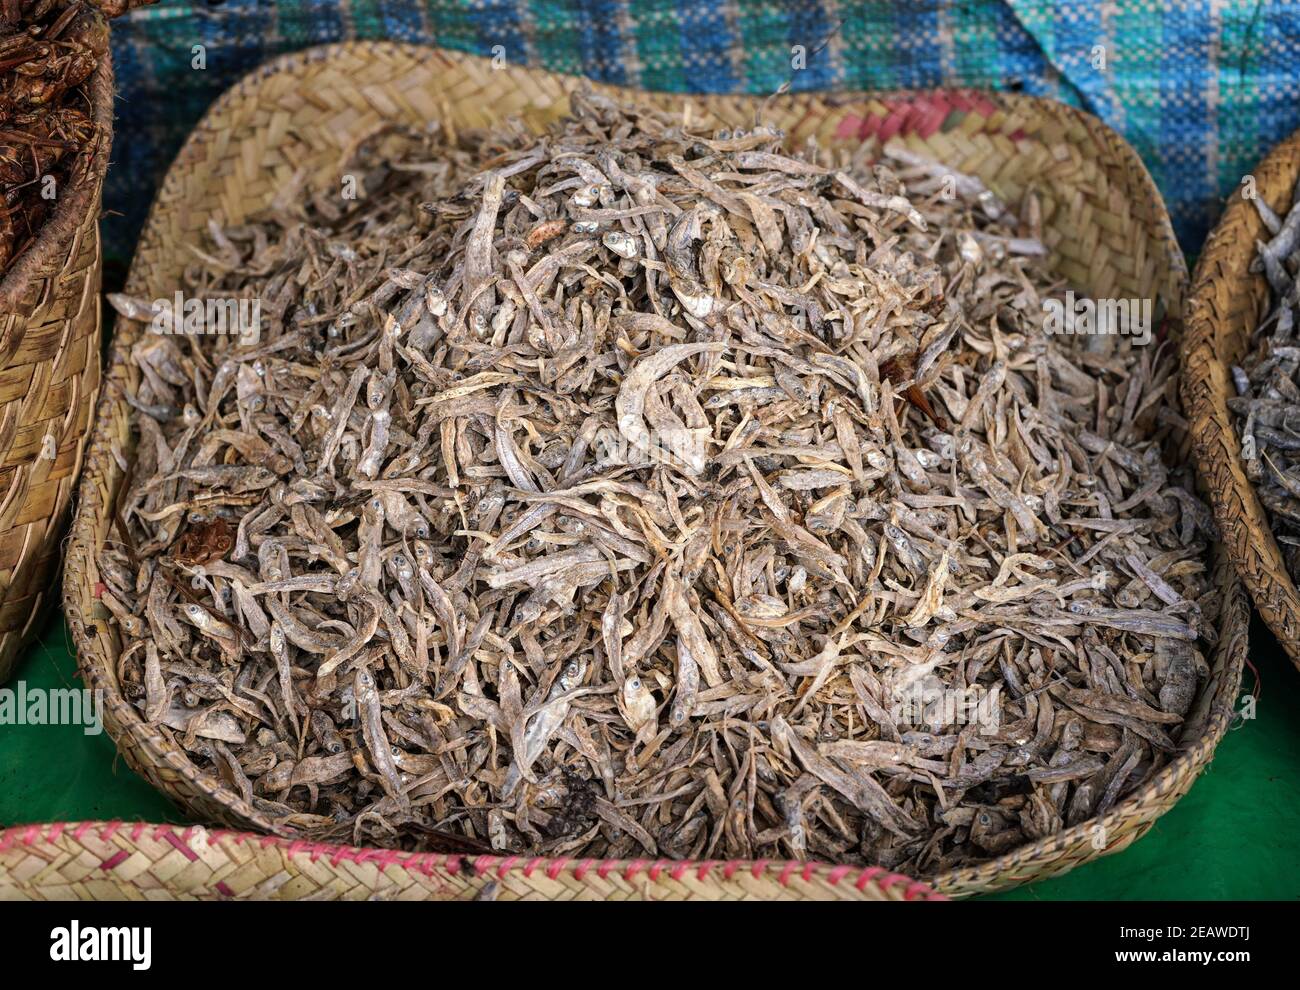 Petits poissons séchés exposés dans un panier de paille sur le marché alimentaire à Ranohira, Madagascar, détail de gros plan Banque D'Images